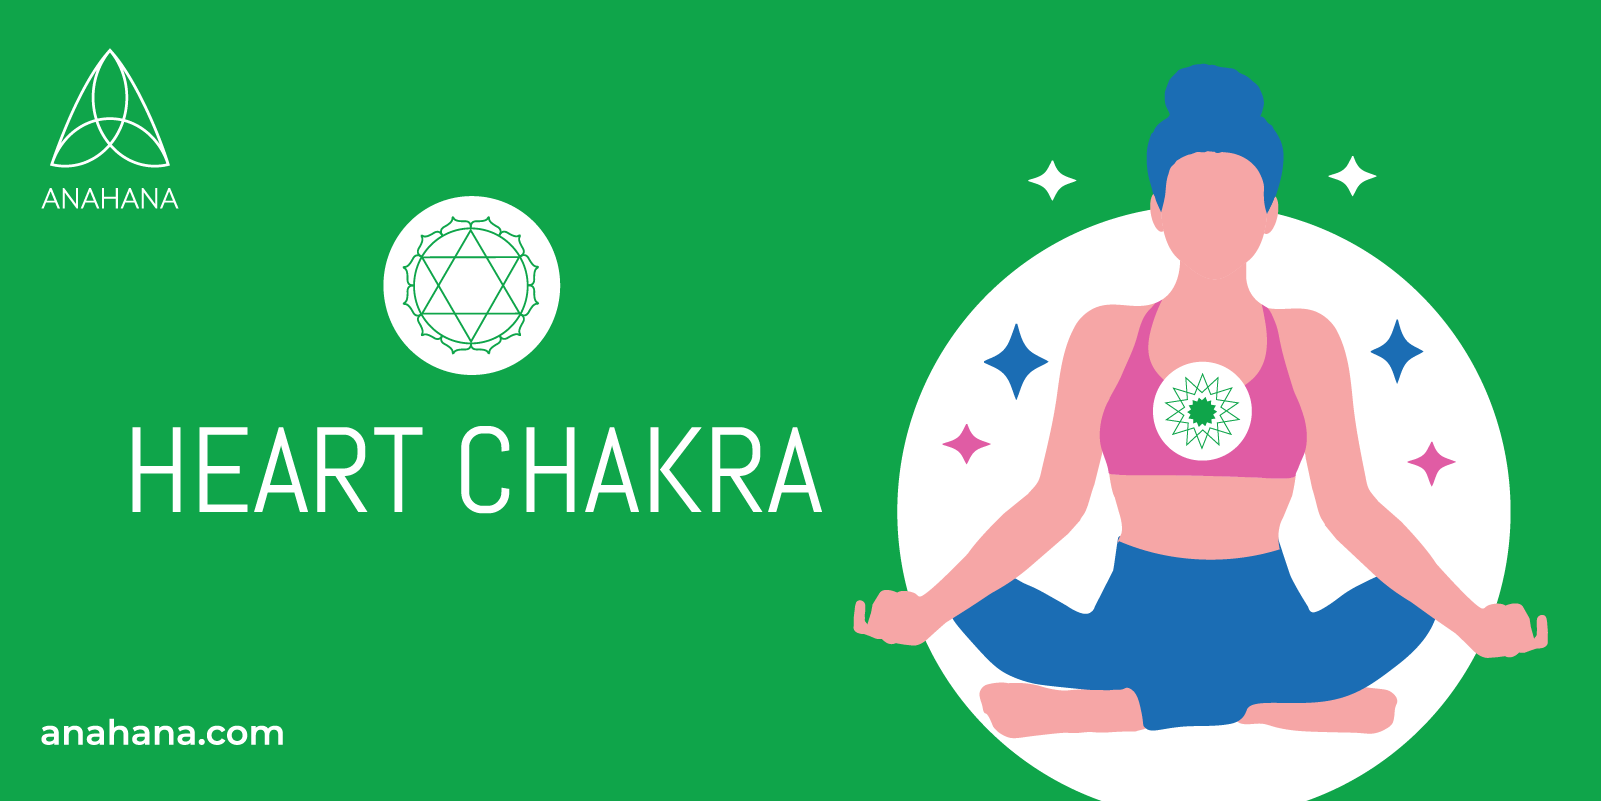 summary of the heart chakra